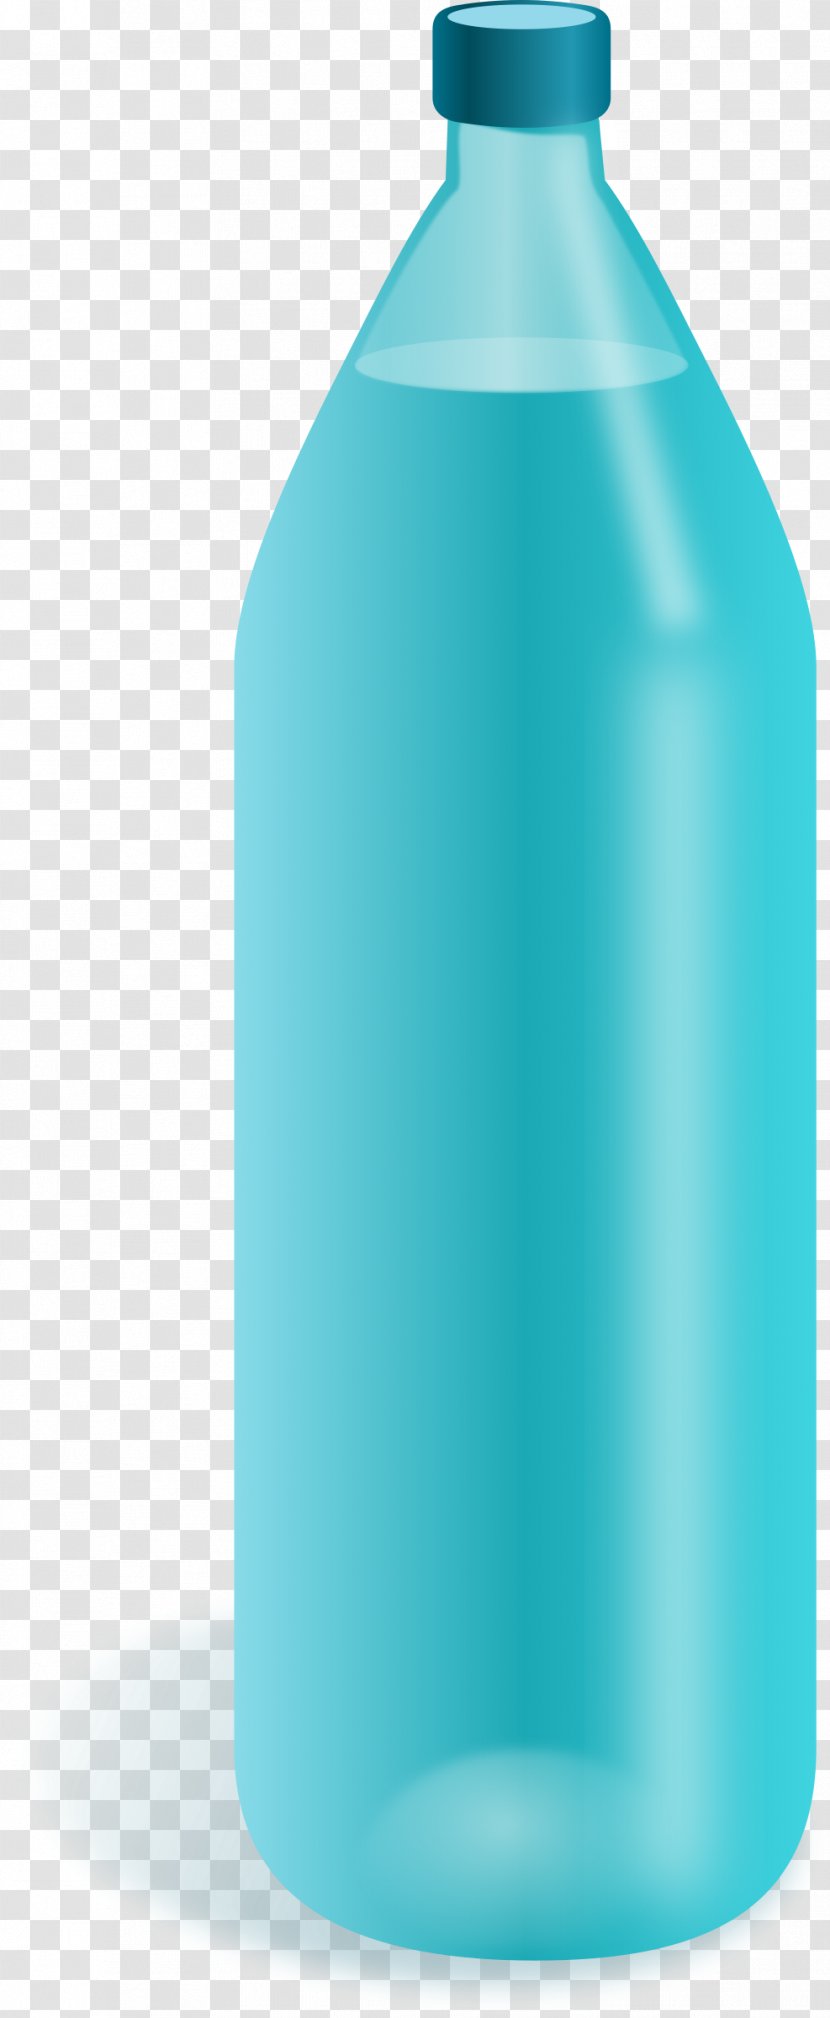 Soft Drink Water Bottle Clip Art - Image Transparent PNG